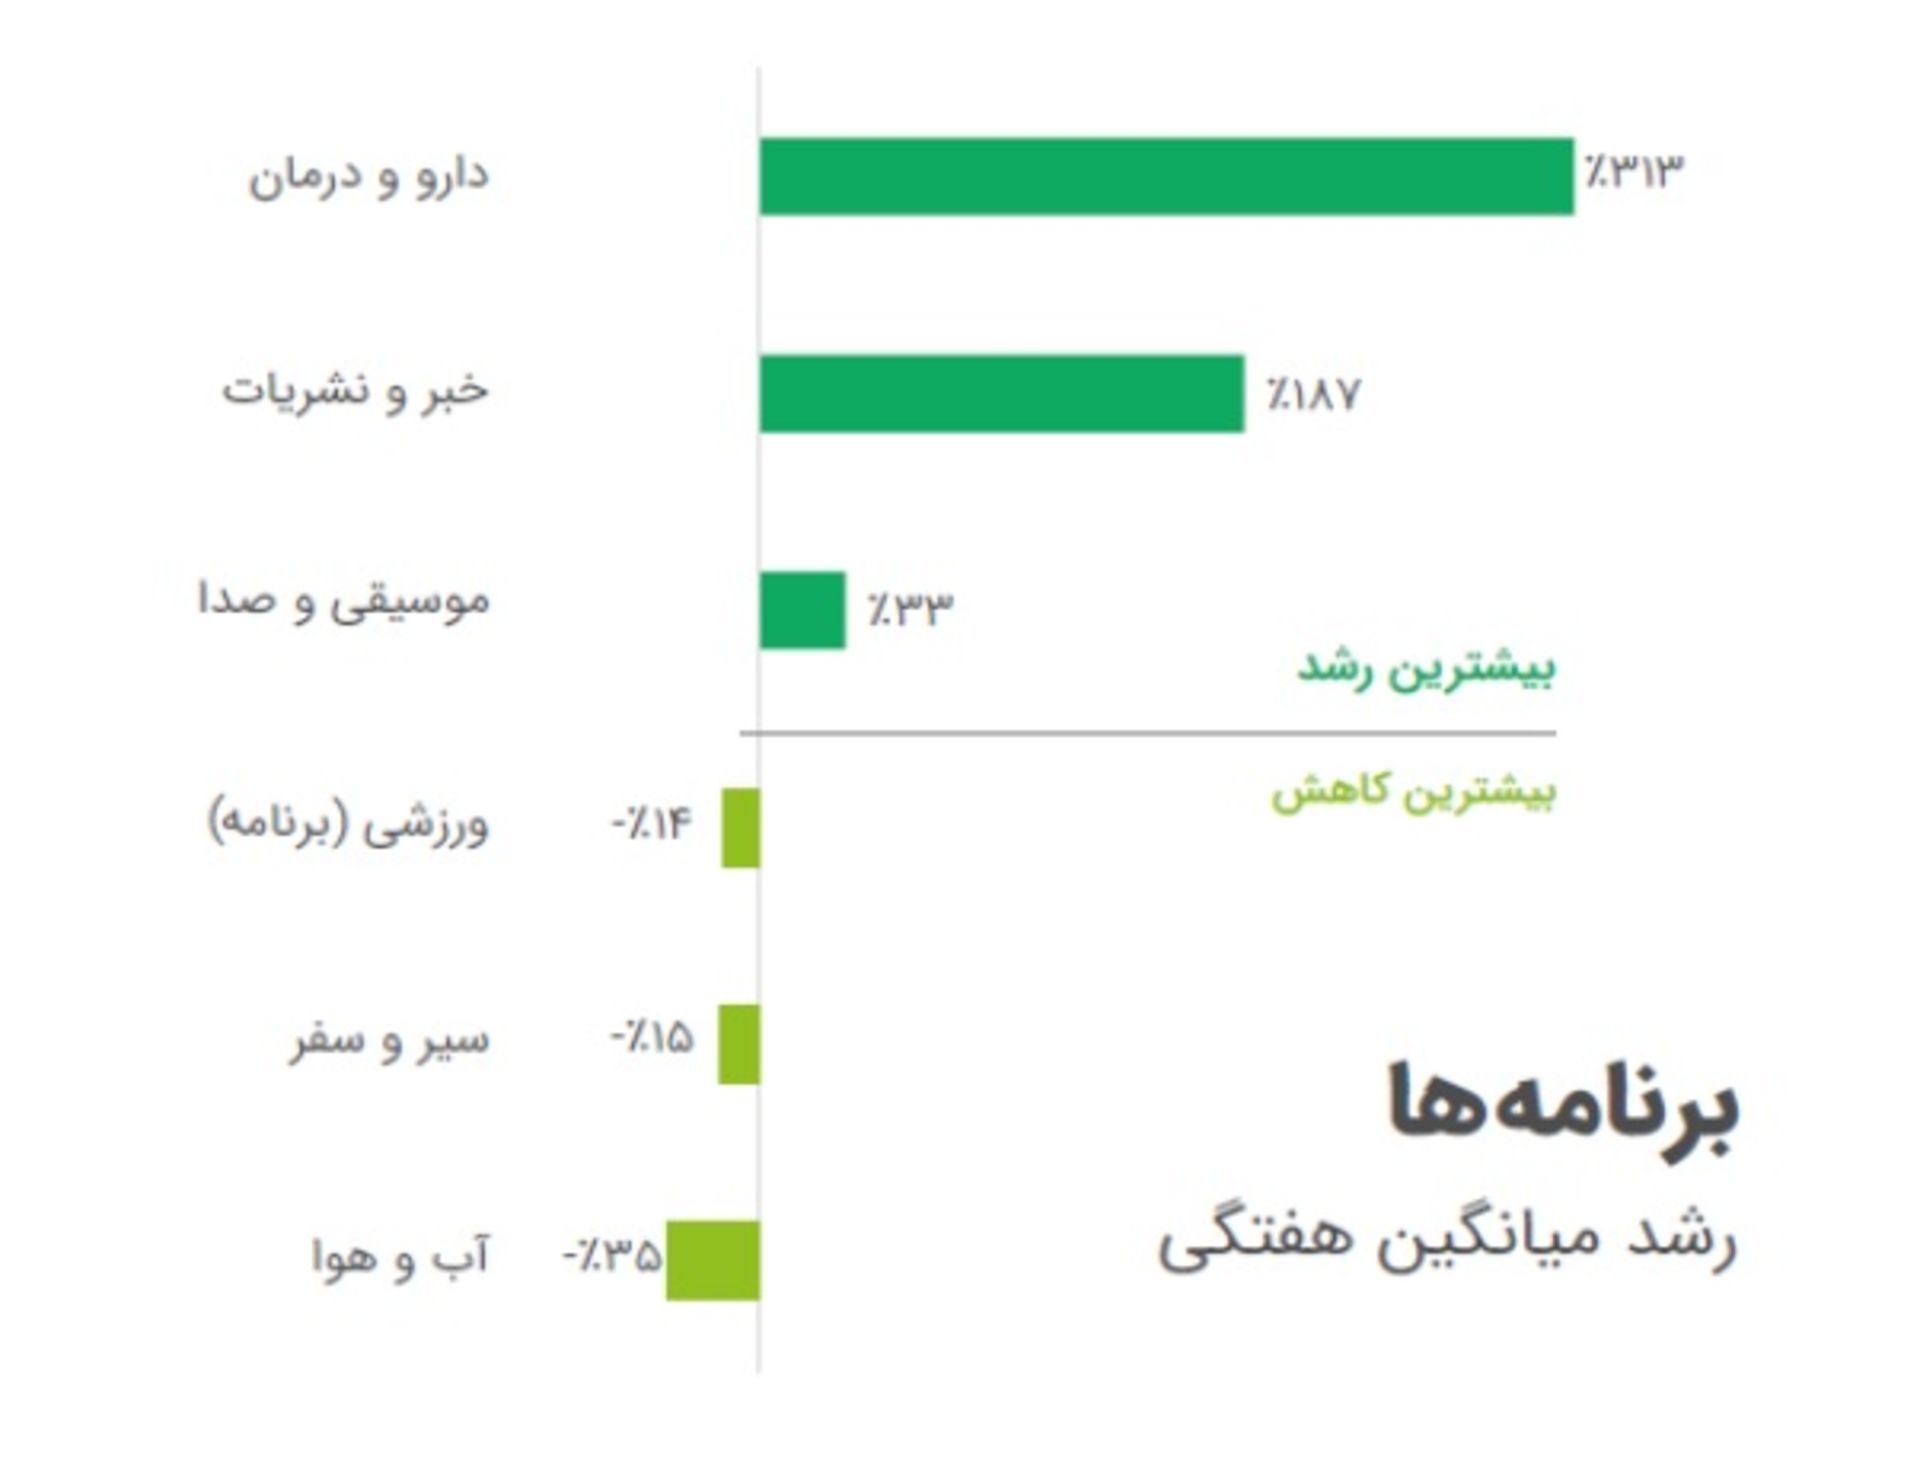 نمودار میانگین رشد هفتگی اپ های ایرانی